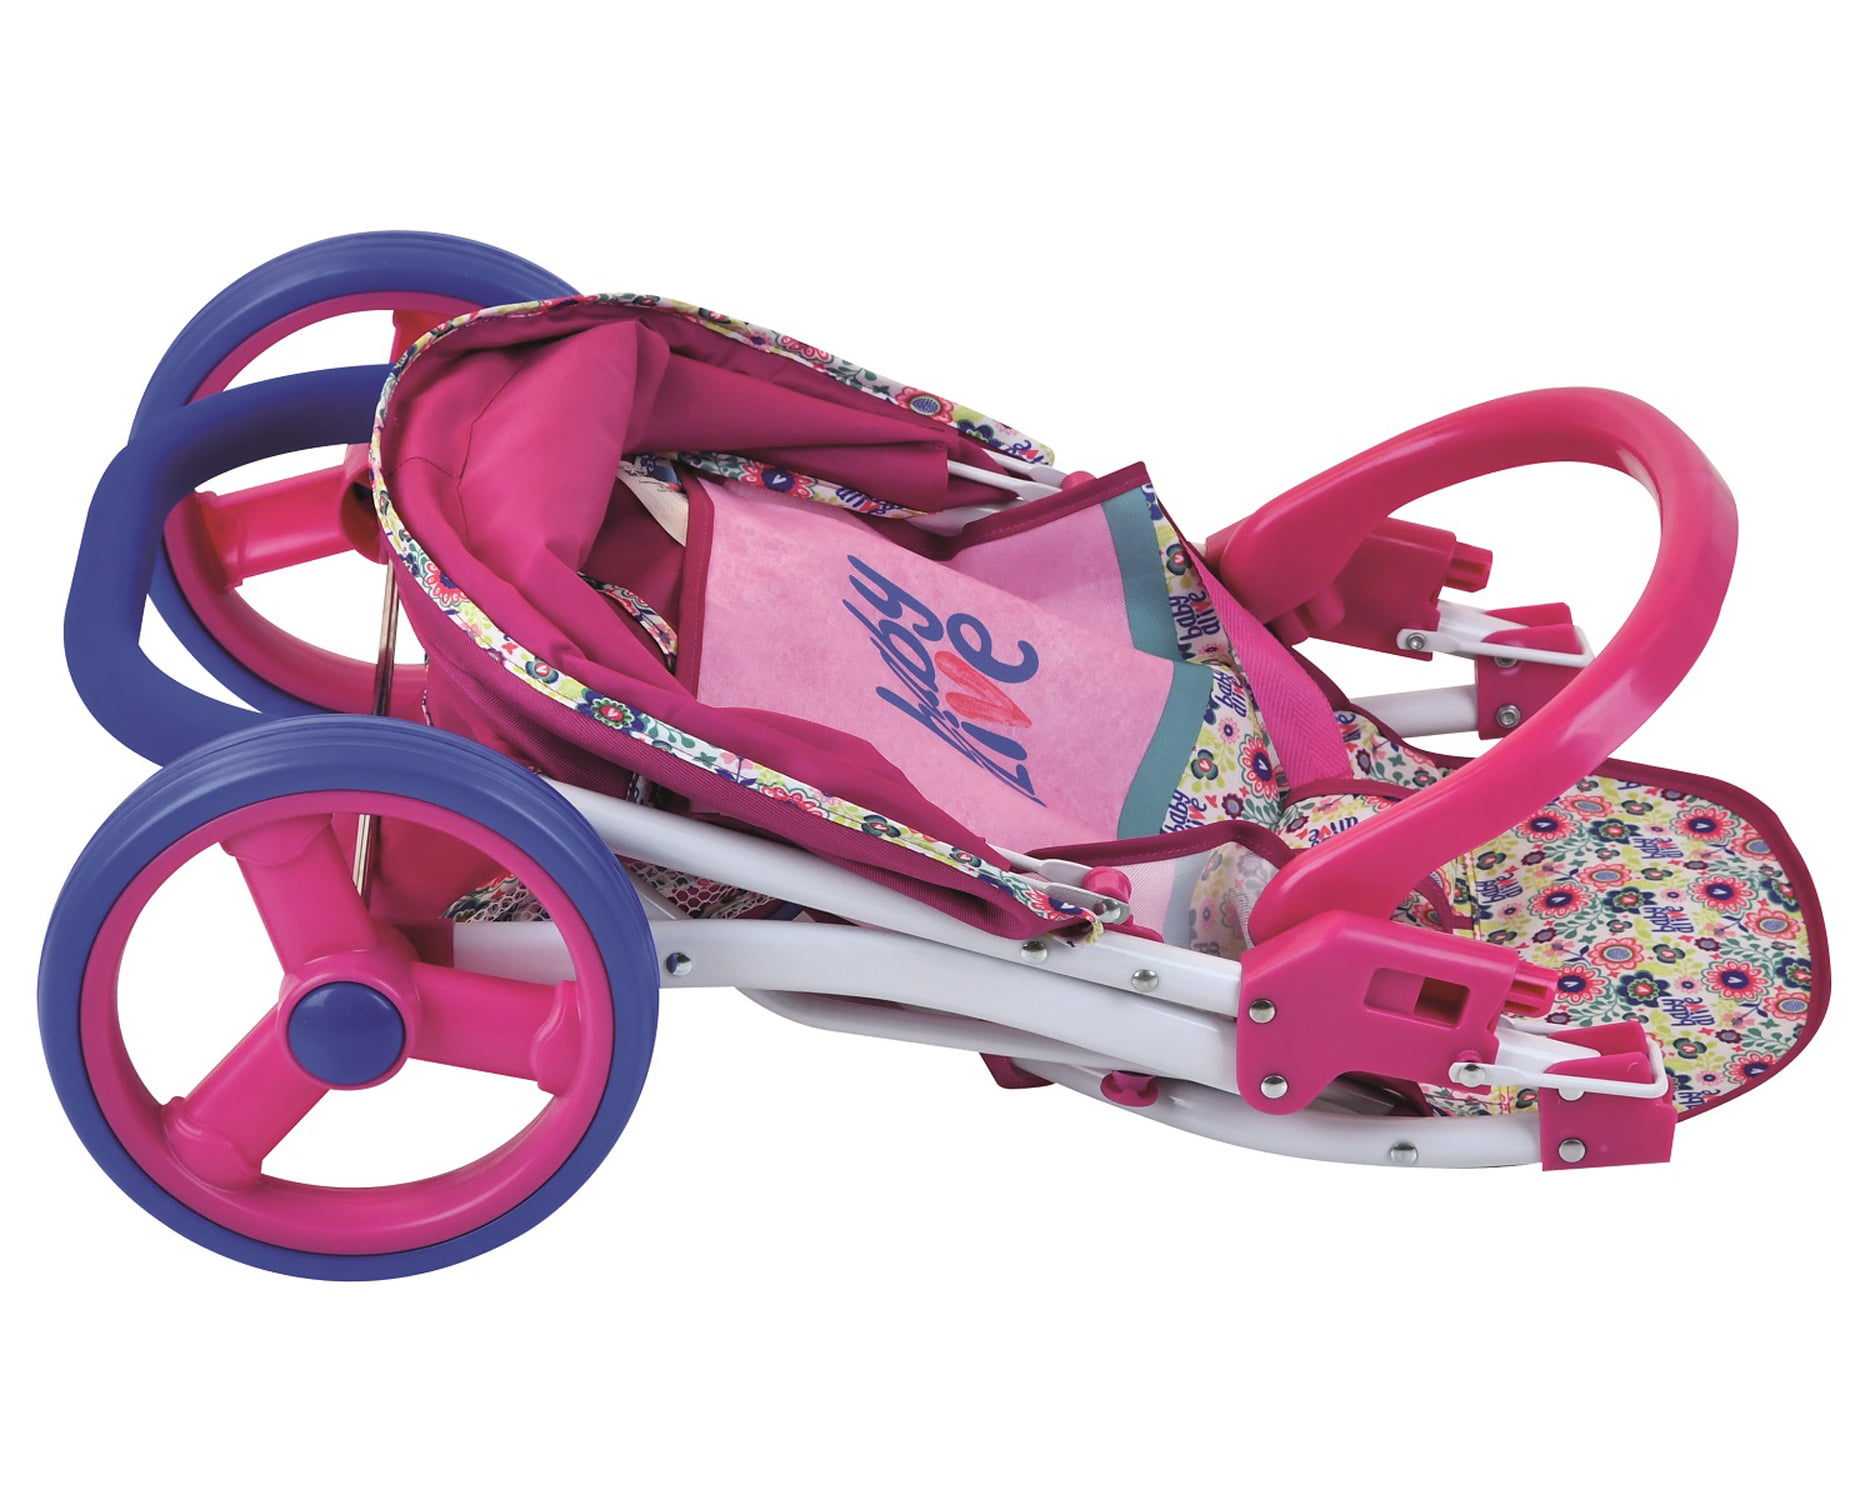 baby toy stroller walmart